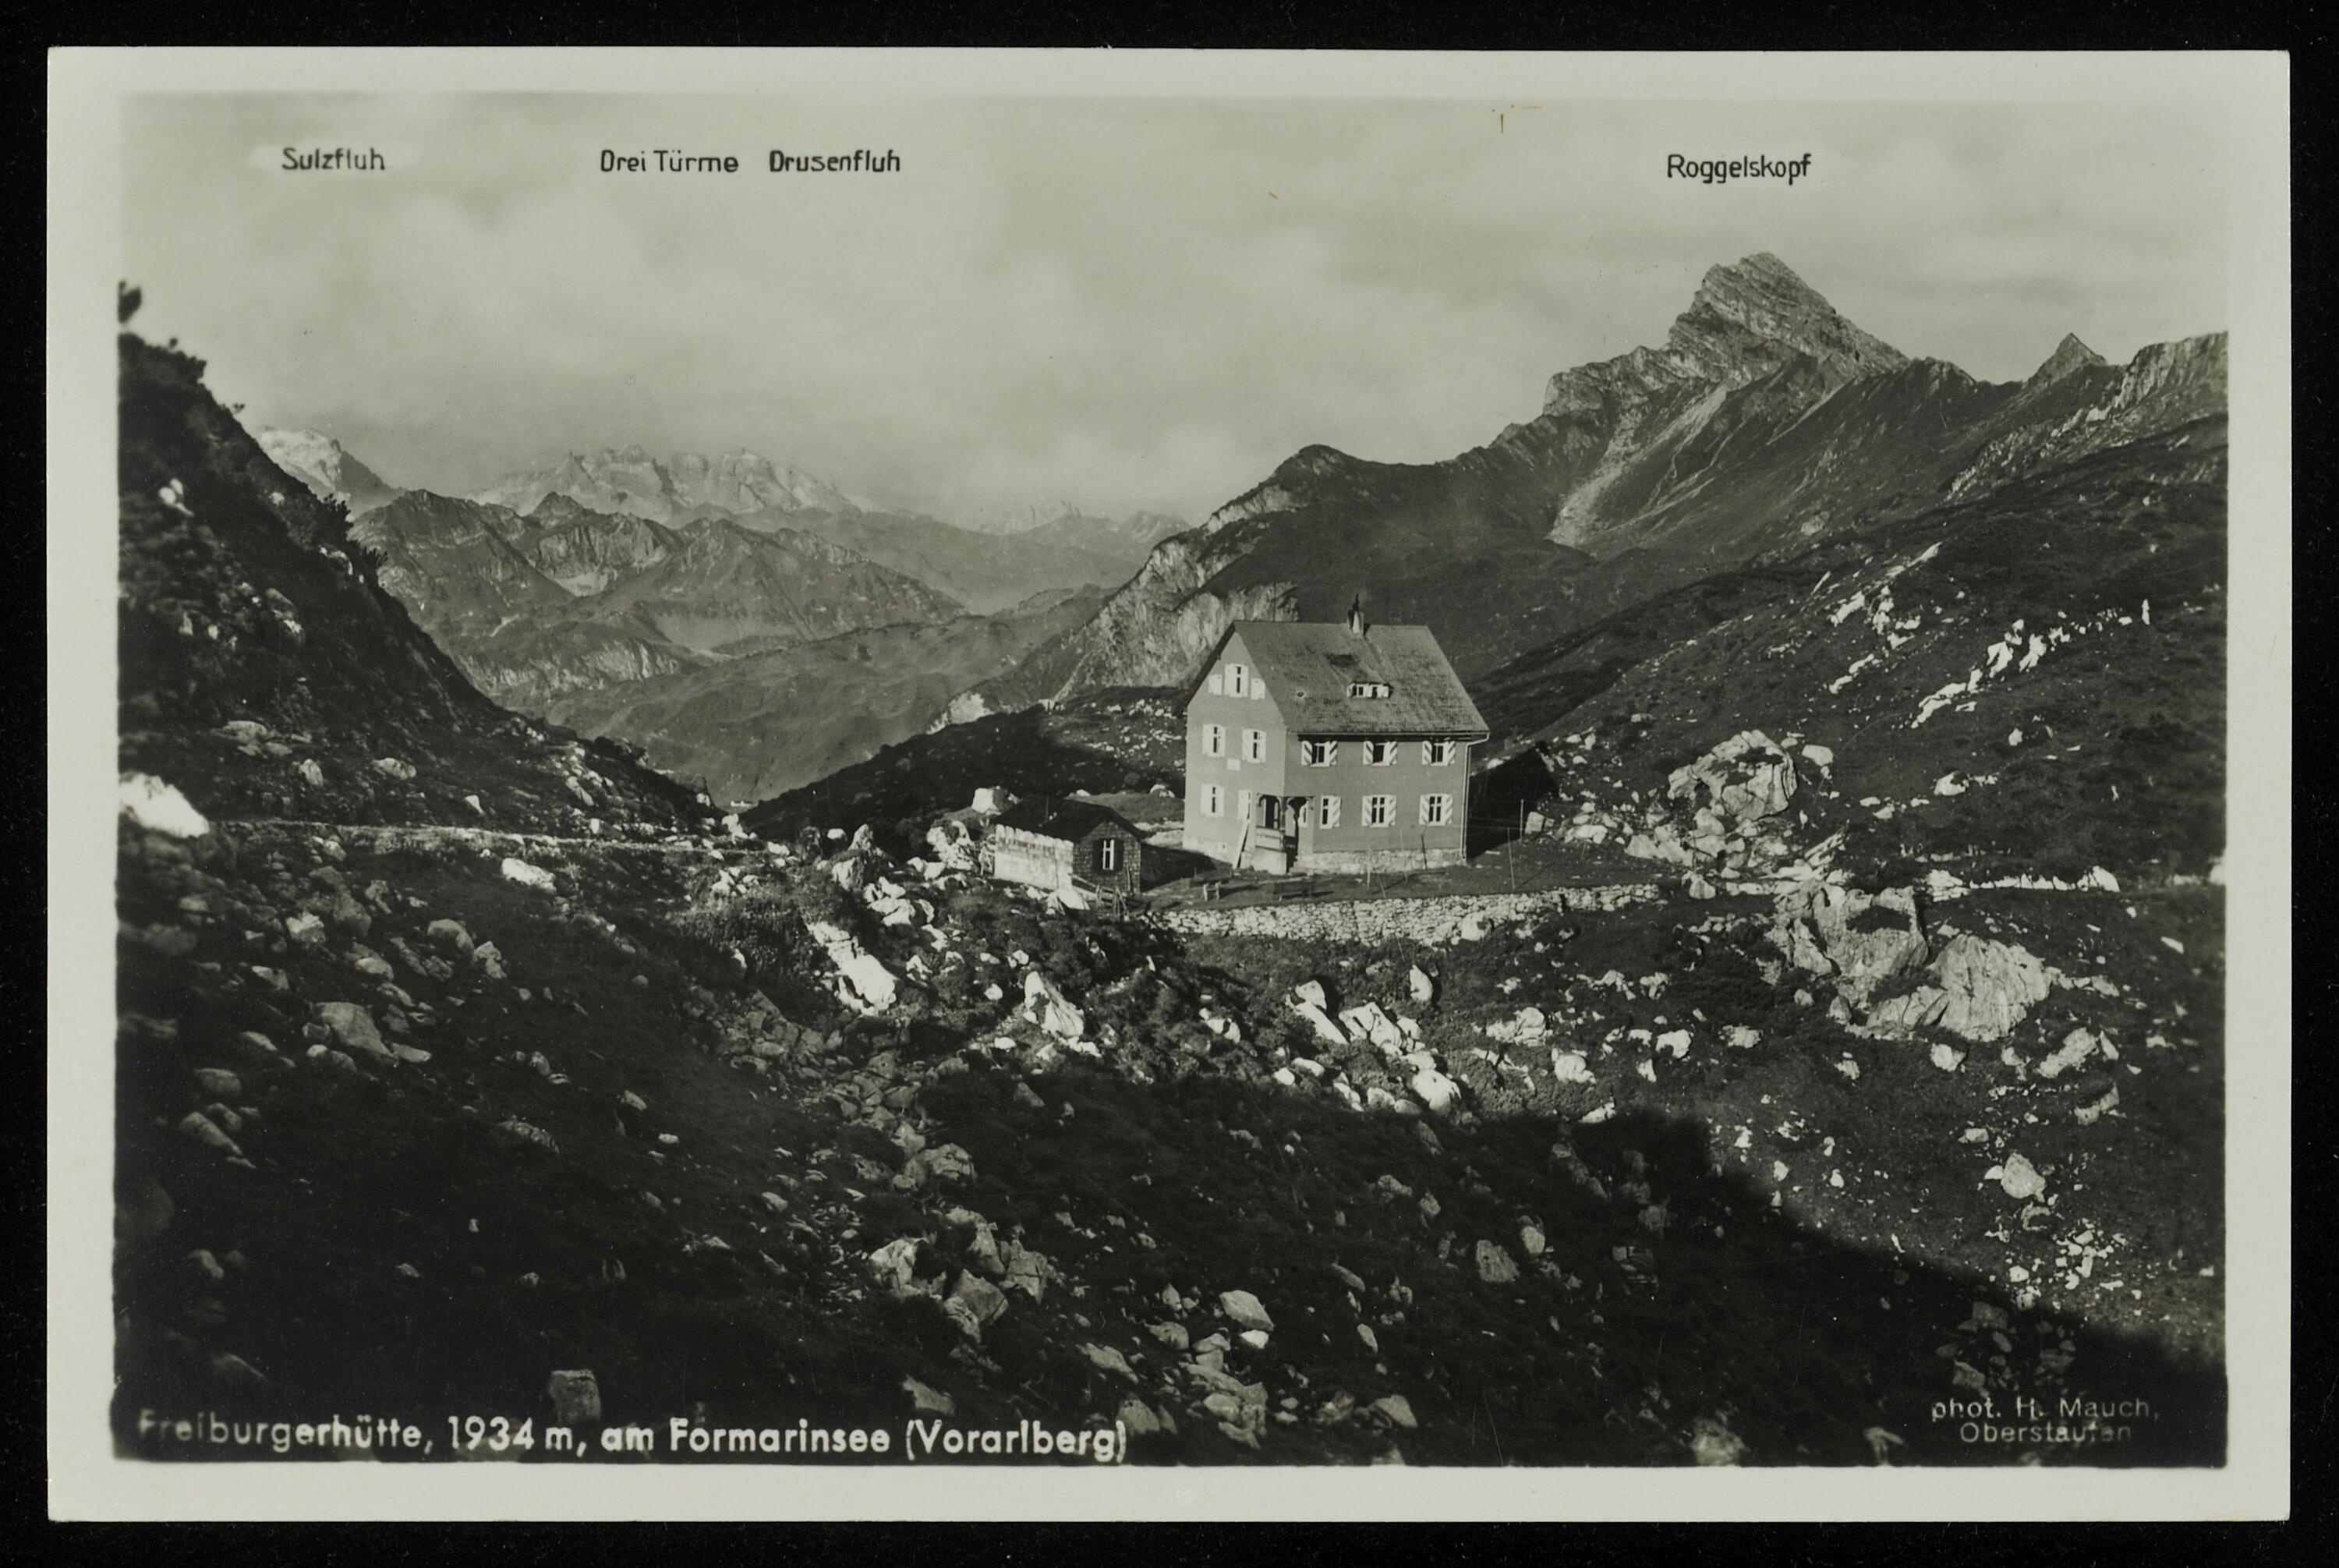 [Dalaas] Freiburgerhütte, 1934 m, am Formarinsee (Vorarlberg)></div>


    <hr>
    <div class=